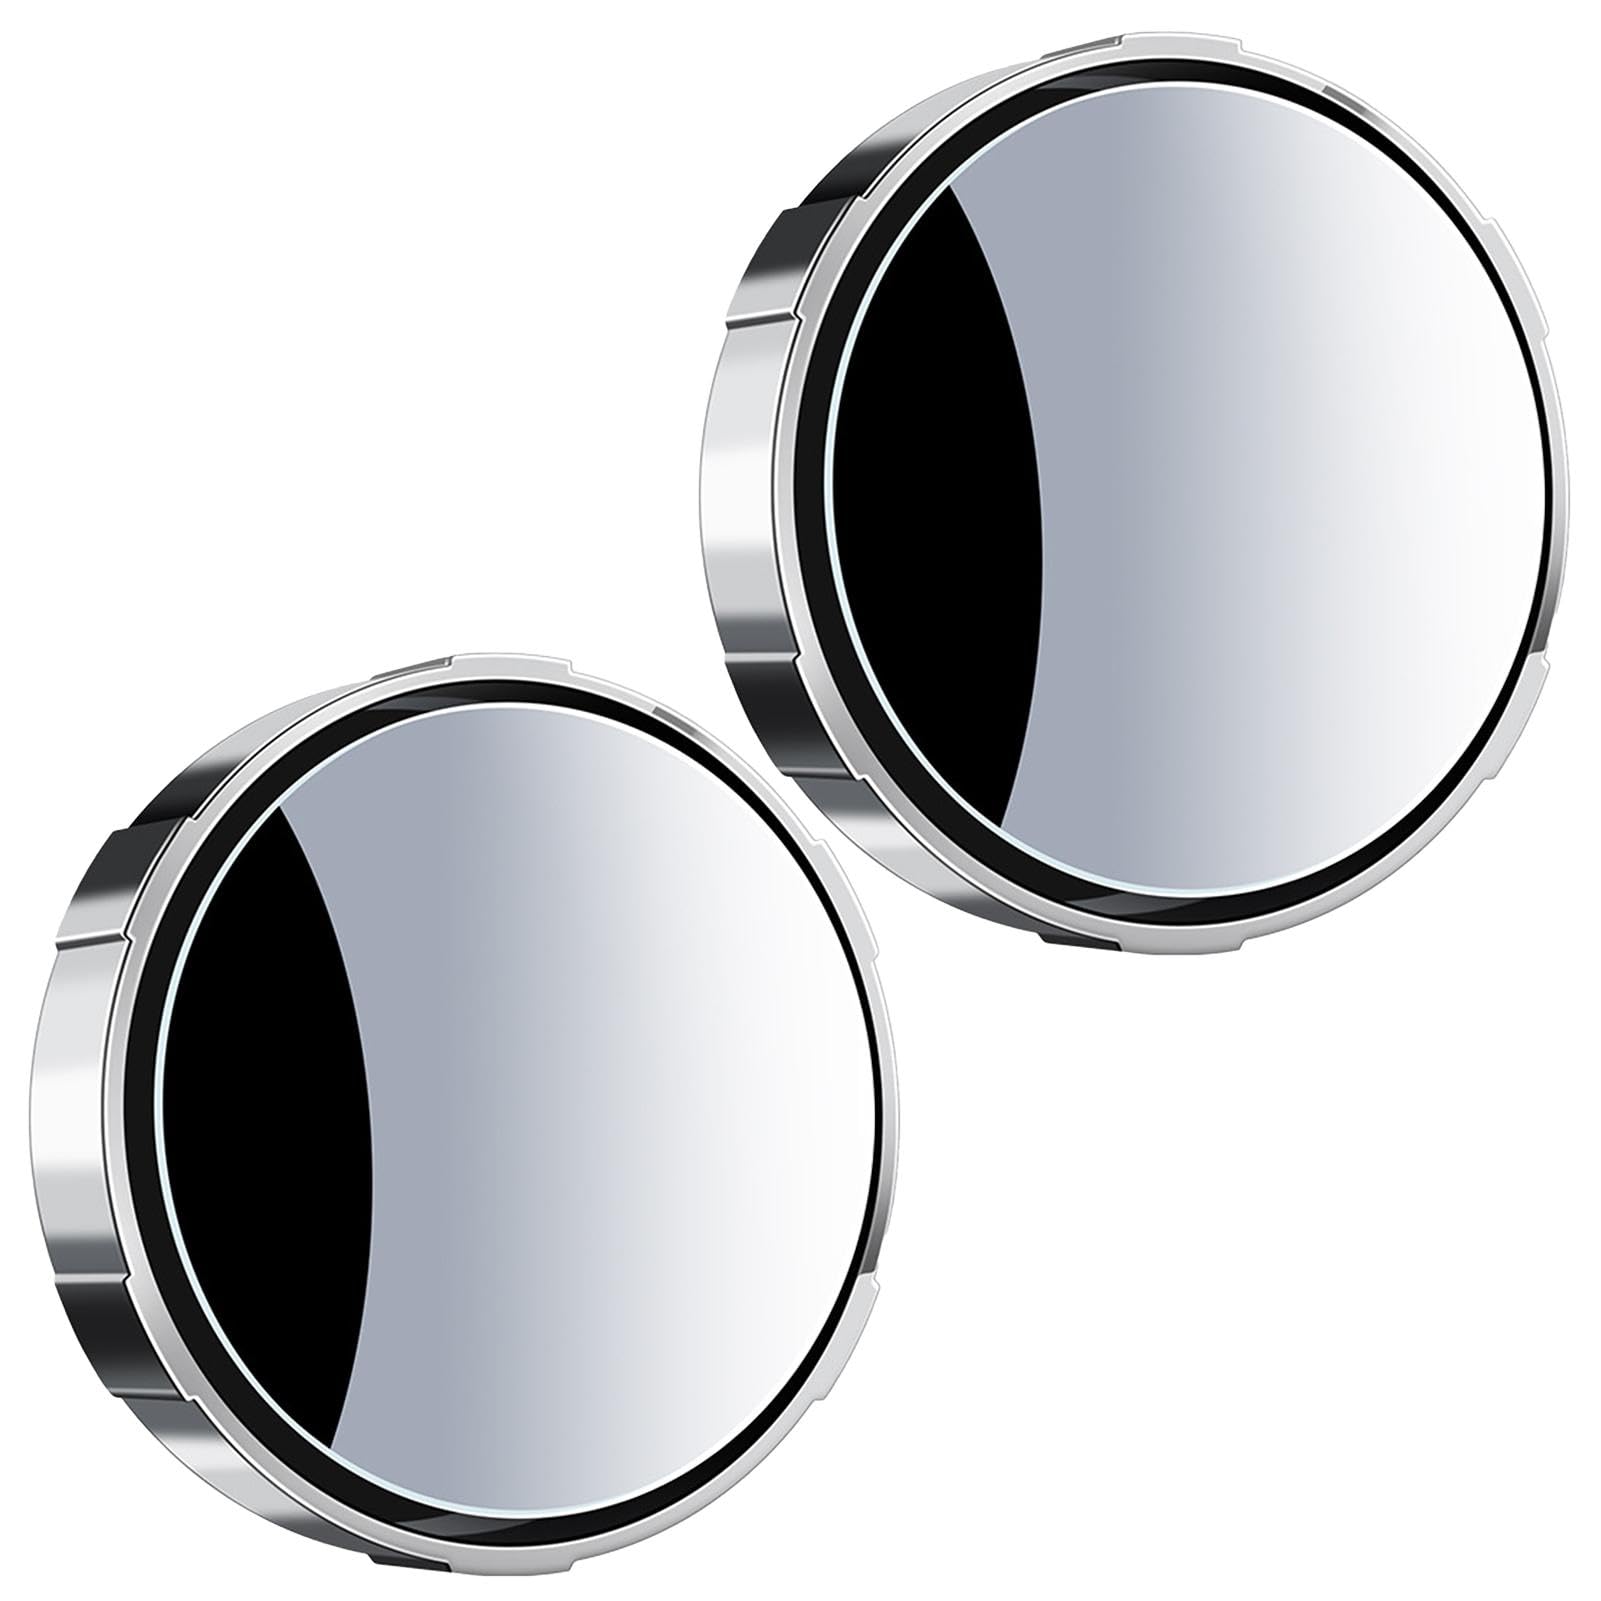 Seitlicher Rückspiegel, Weitwinkel-Rückspiegel - 360 Grad verstellbarer Blindspot-Spiegel mit Saugnapf - hochauflösender Blindspot-Spiegel für Reisen, Alltag, Geschäftsreise von Xinhuju